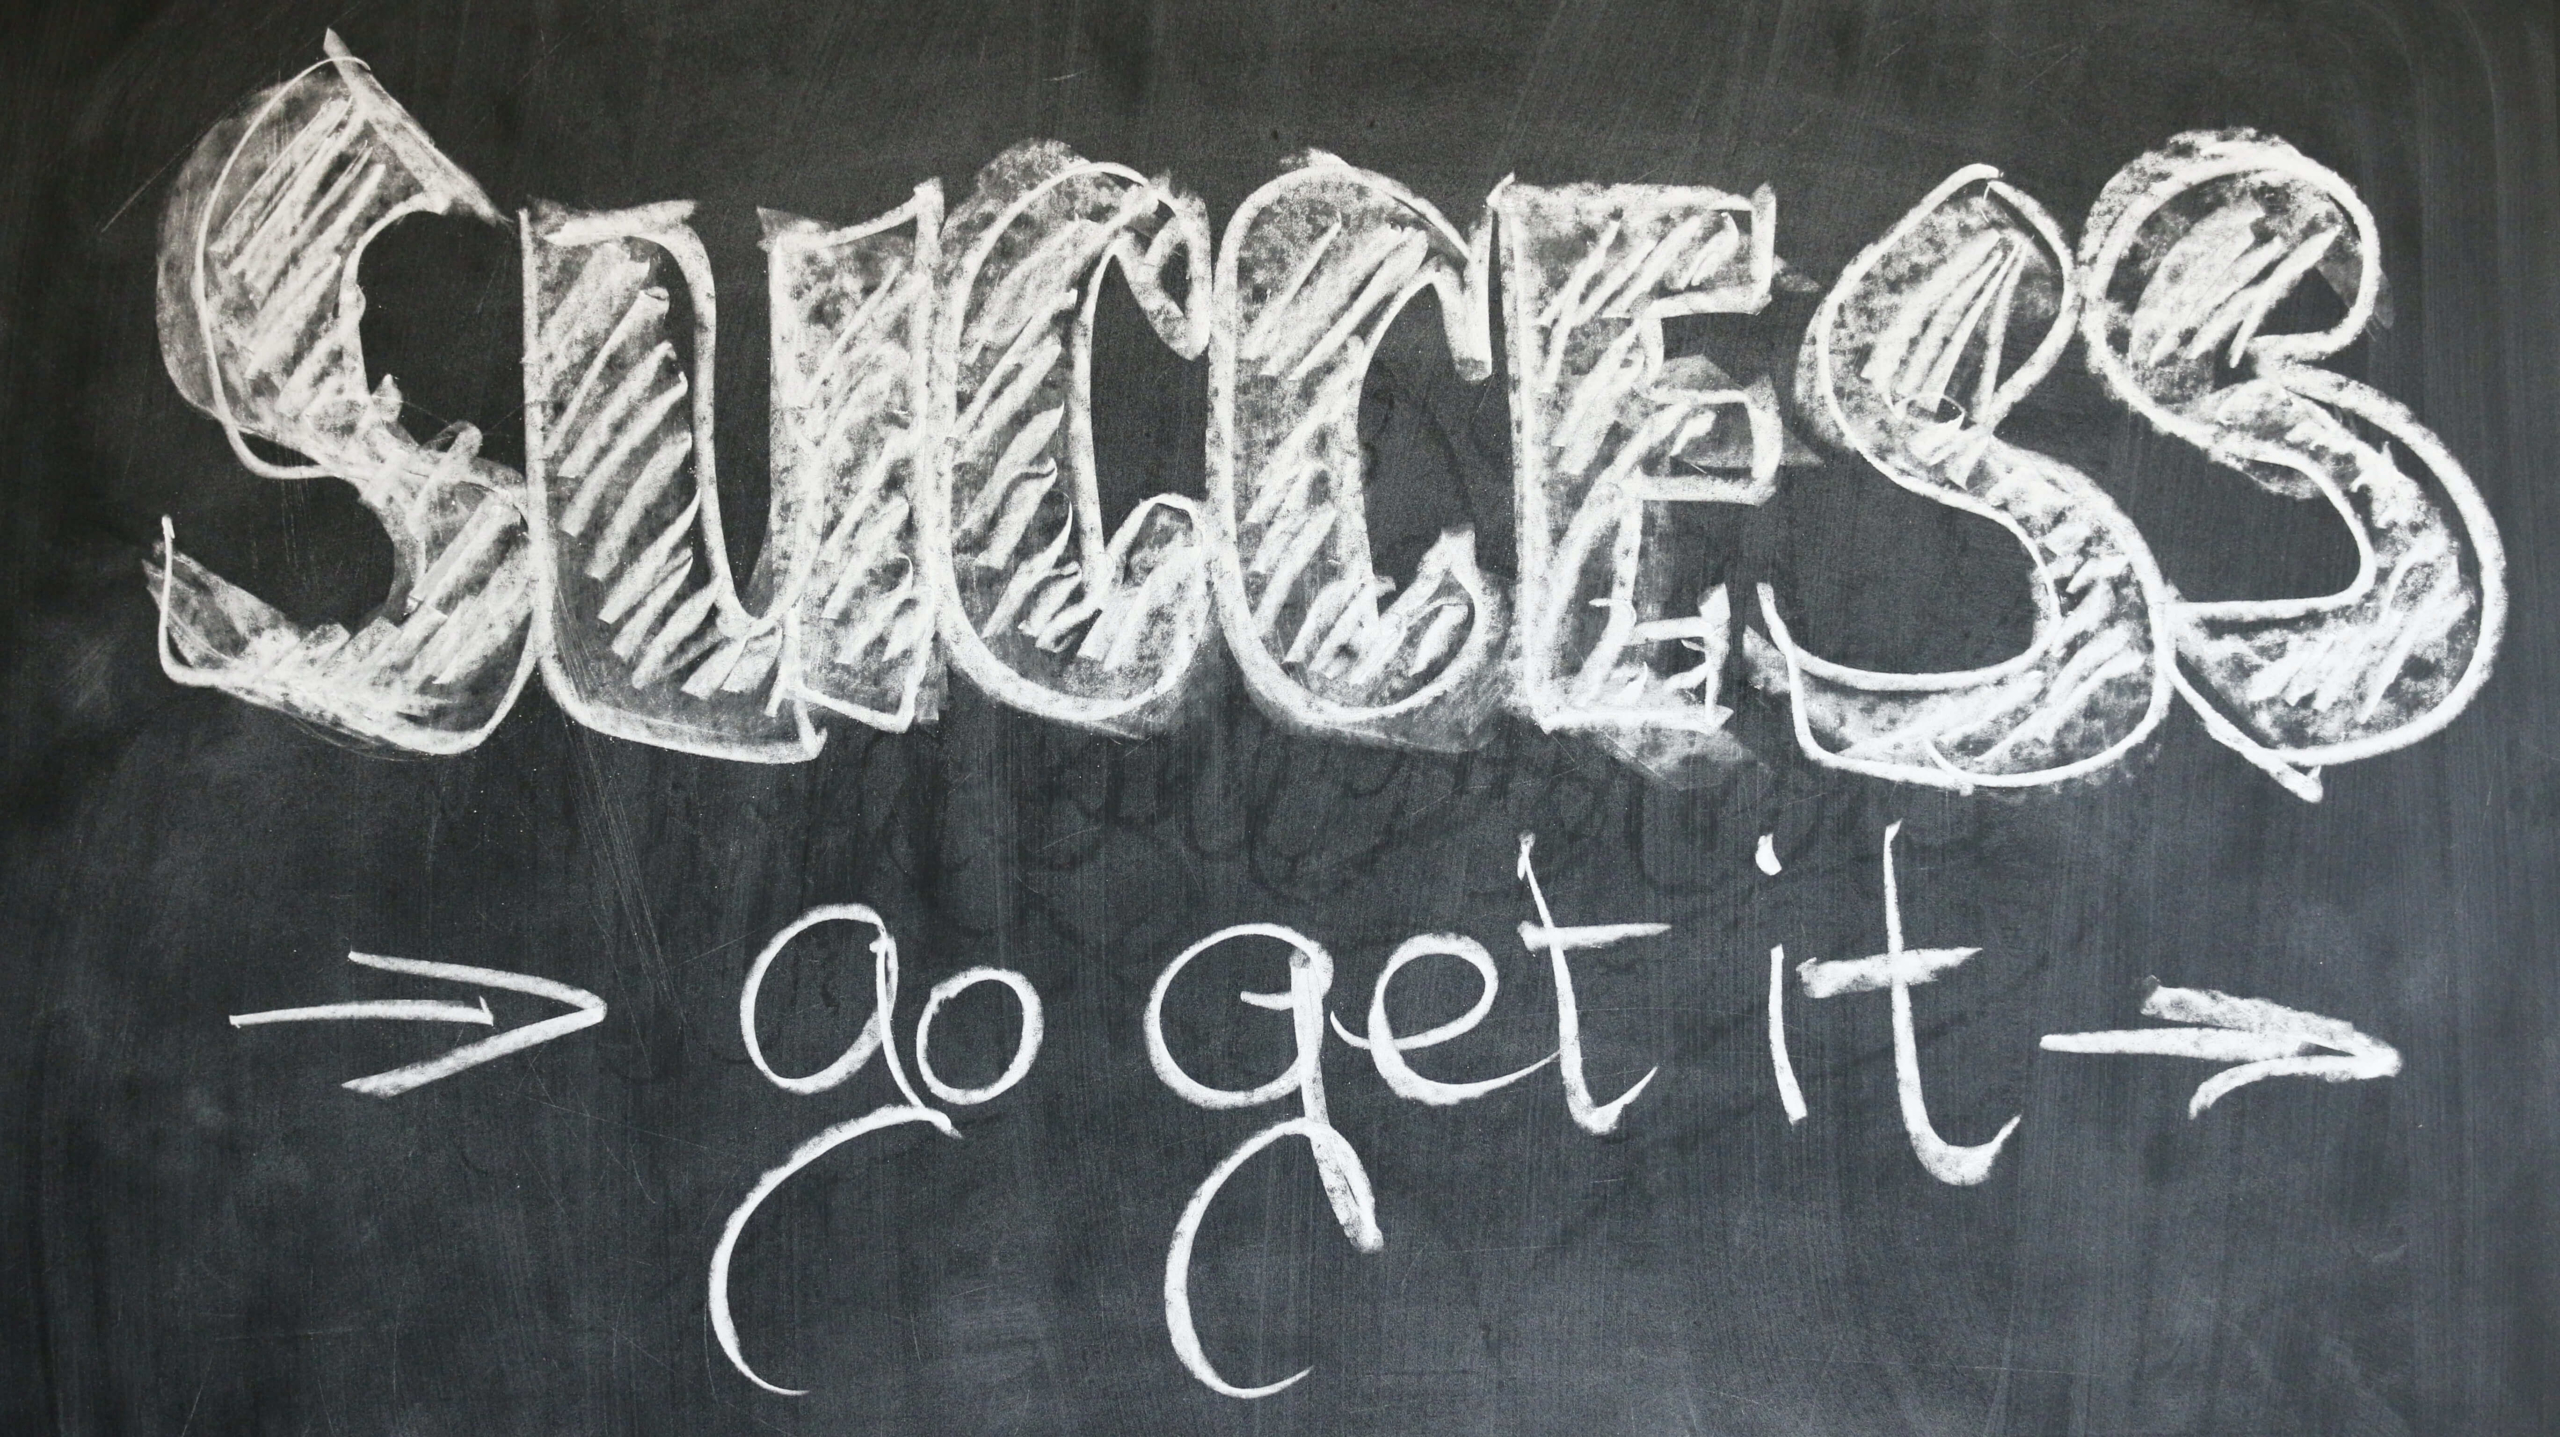 Blackboard has the words "Success: go get it" written on it